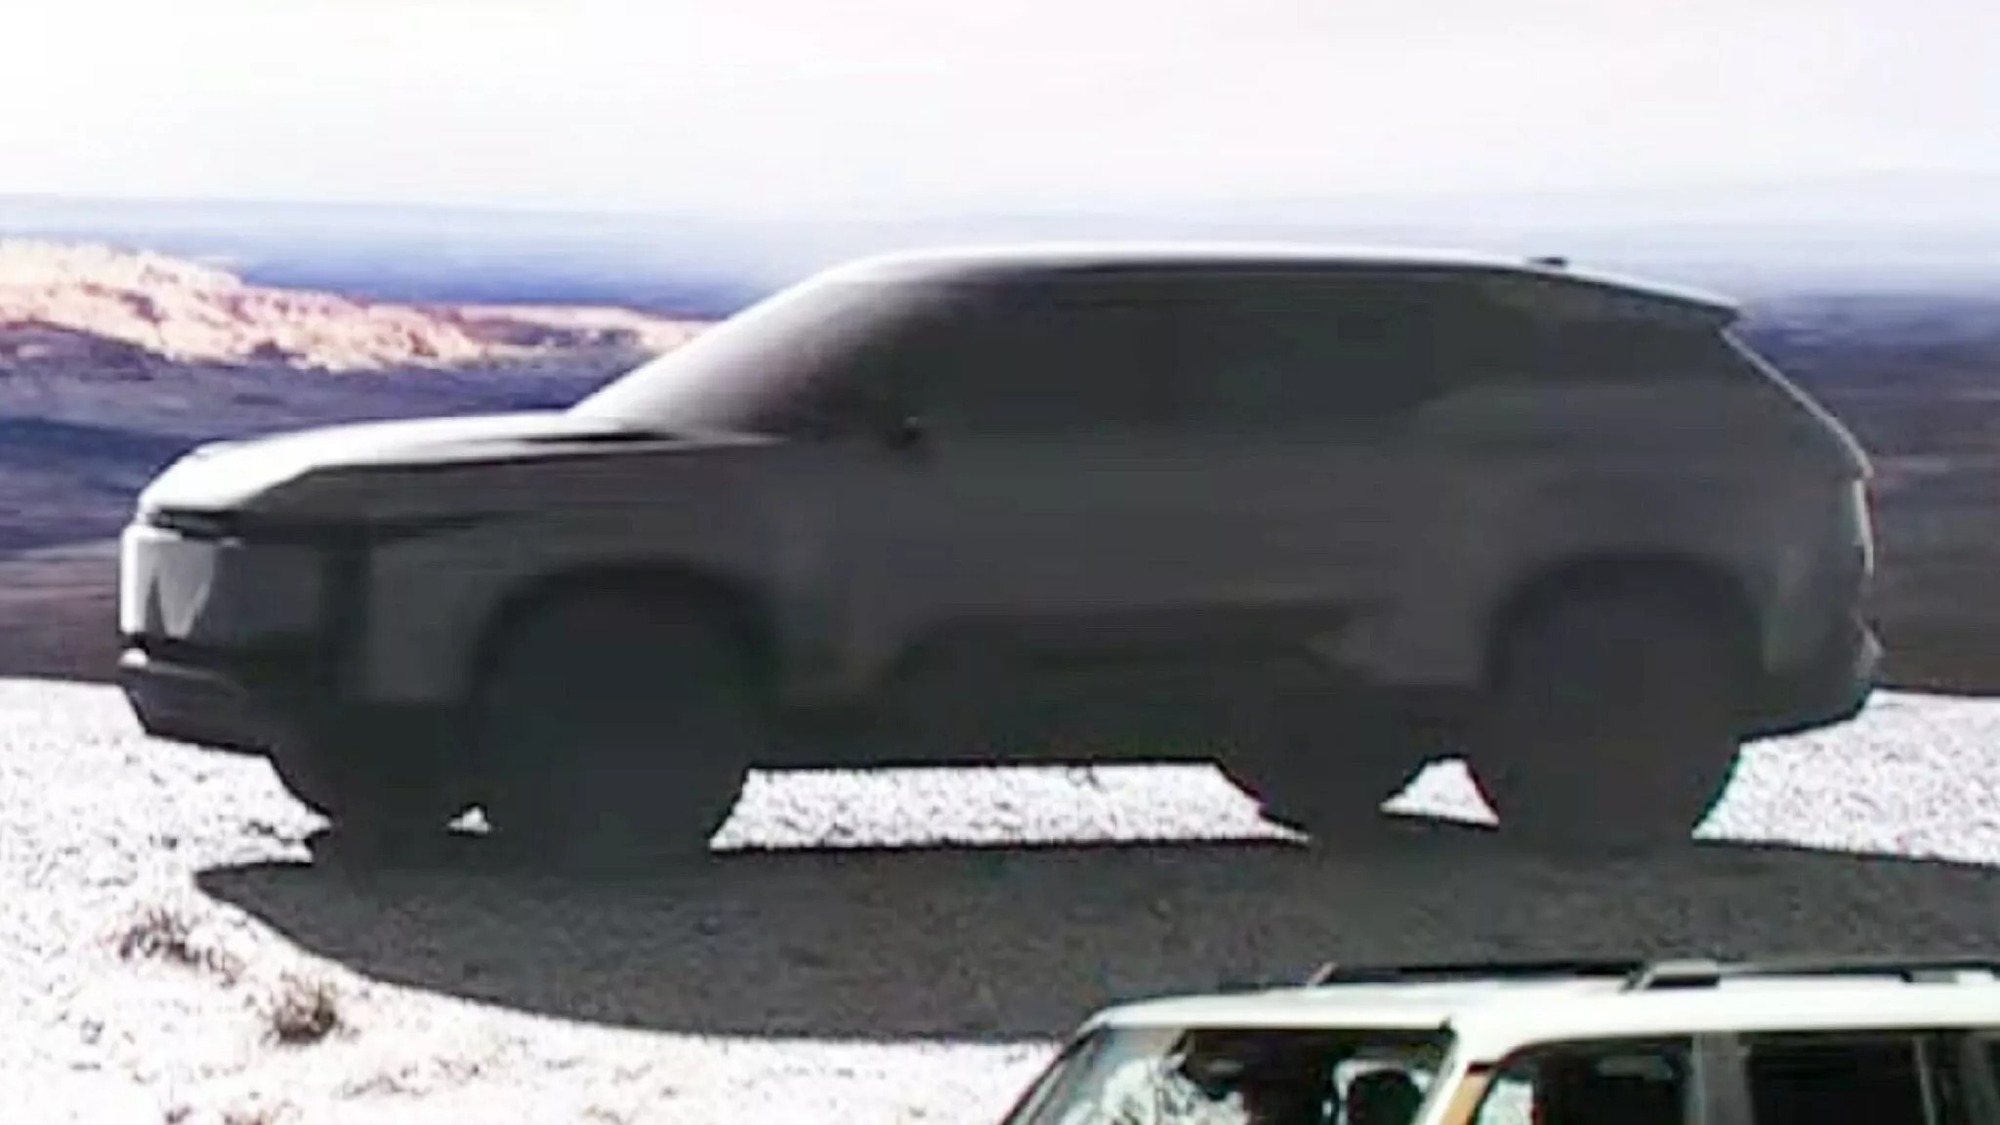 Toyota úp mở 2 mẫu SUV bí ẩn, một mẫu nhỏ như Jimny dễ thành hàng 'hot' - Ảnh 2.